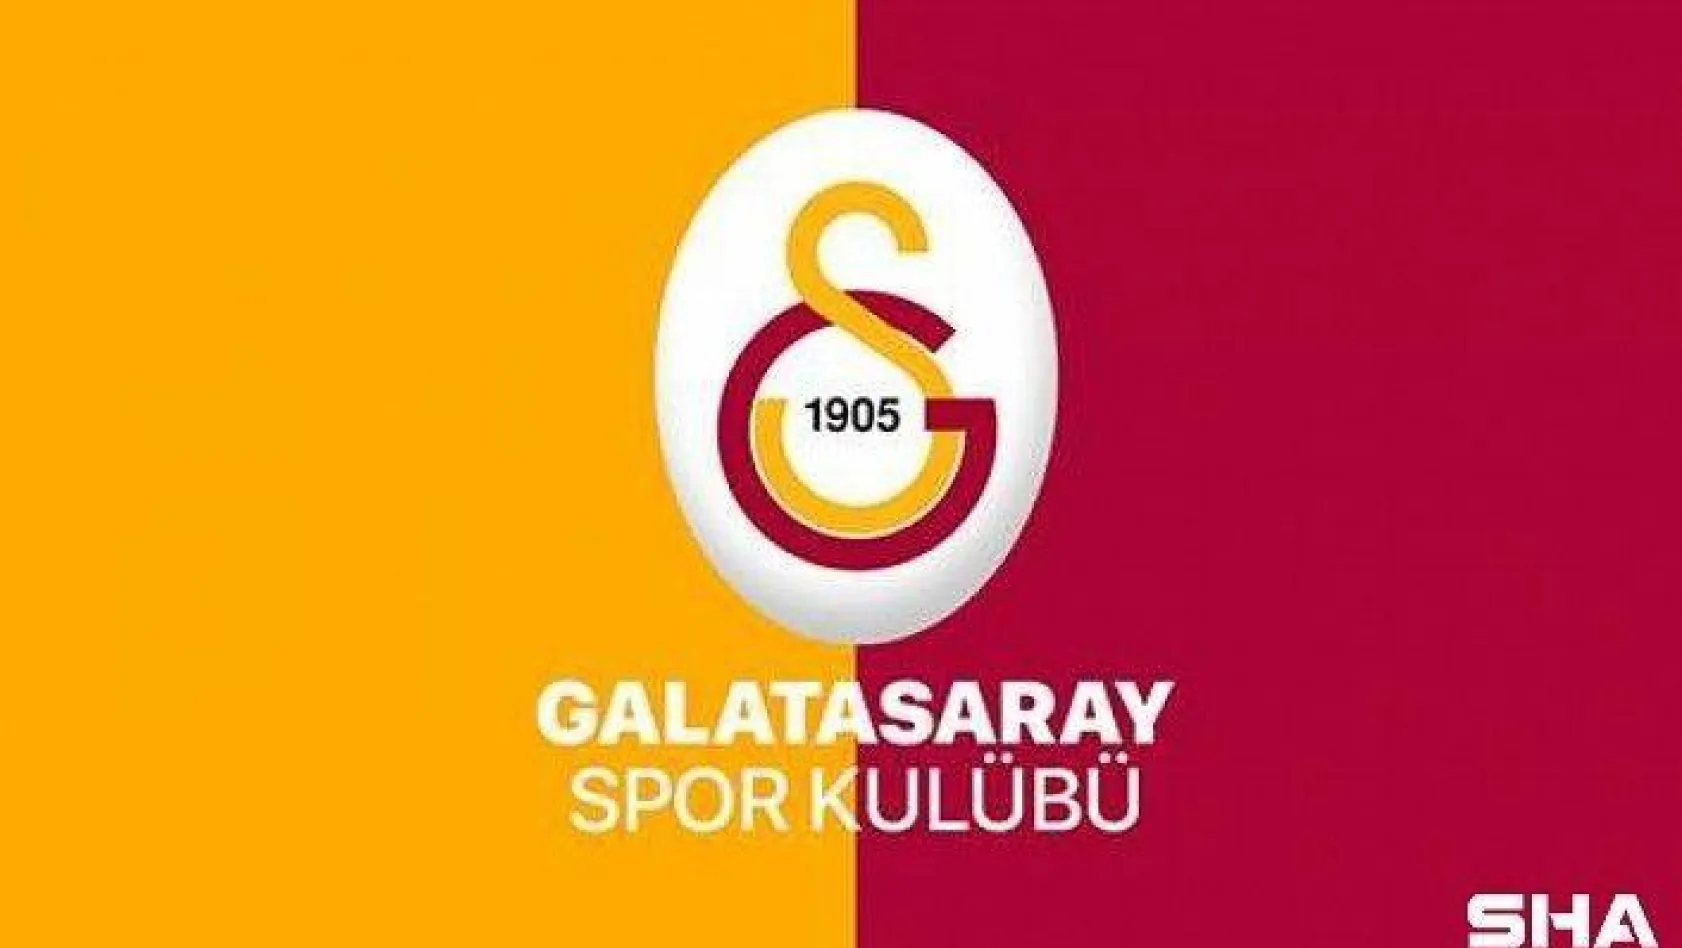 Galatasaray'dan taraftara duyuru